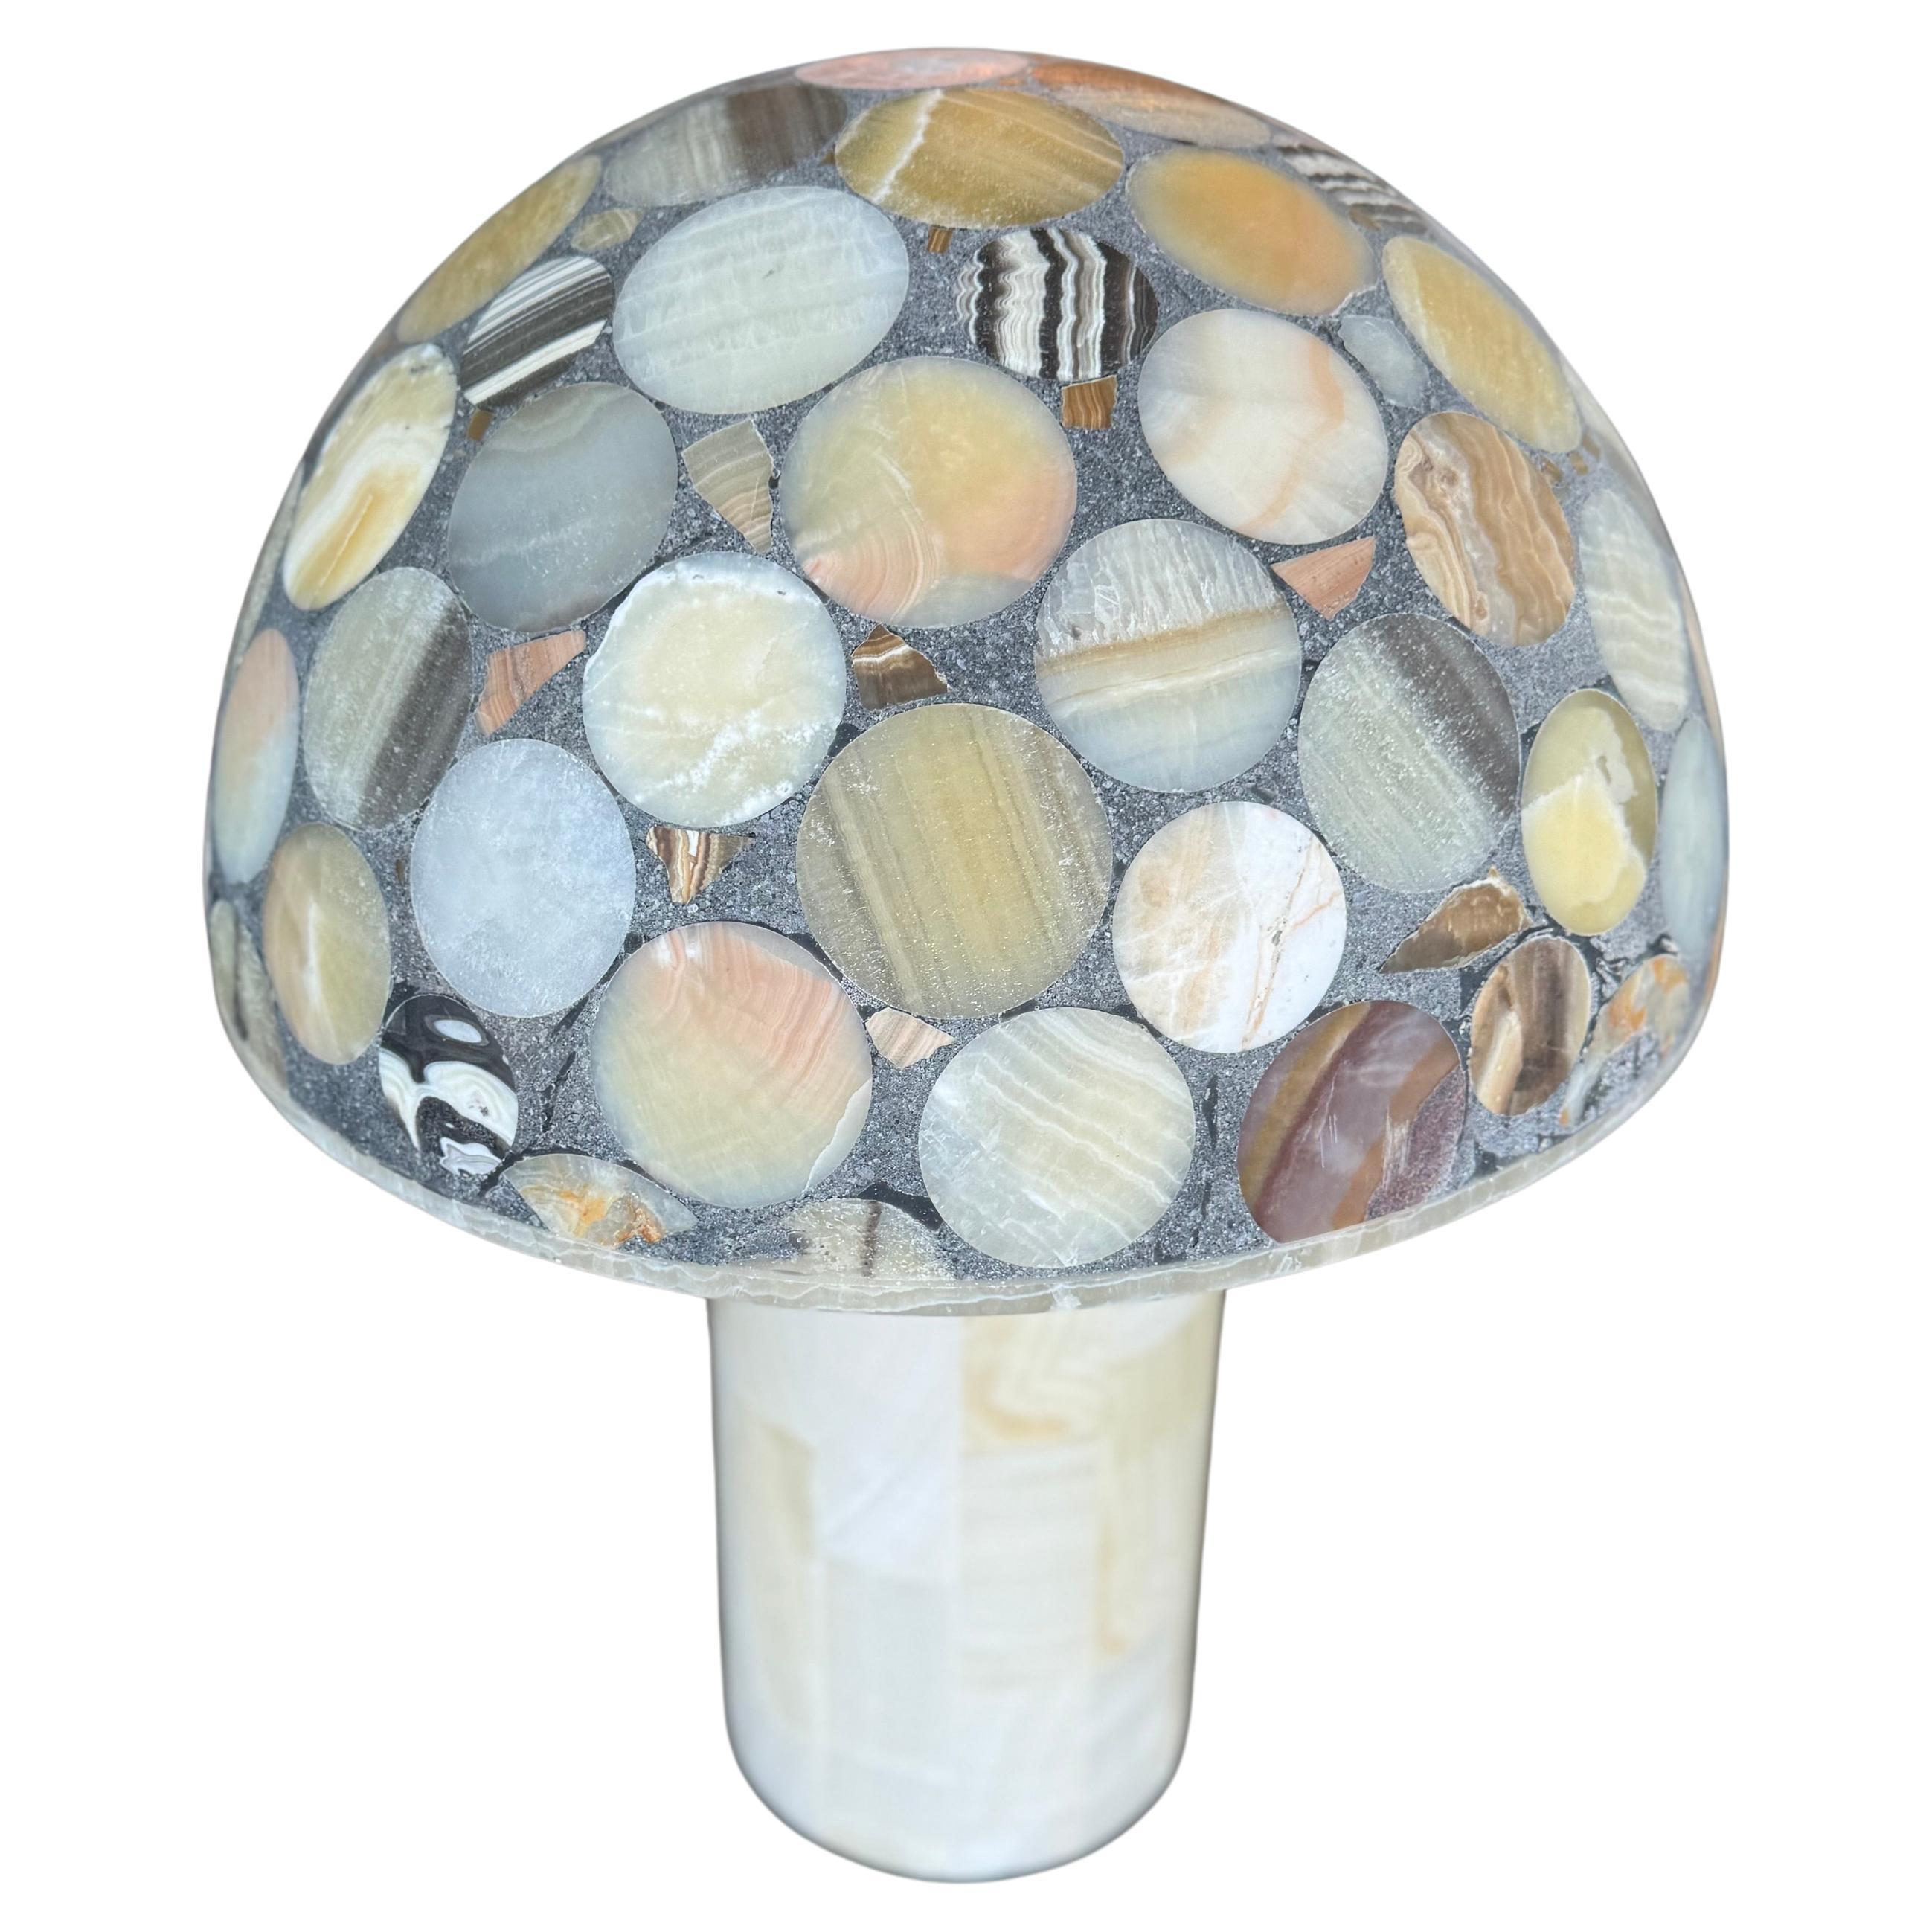 Rare lampe de table en onyx, méticuleusement travaillée avec un ensemble captivant de pierres assorties. Son design opulent présente une incrustation de mosaïque époustouflante, mettant en valeur la beauté naturelle et les motifs complexes de chaque